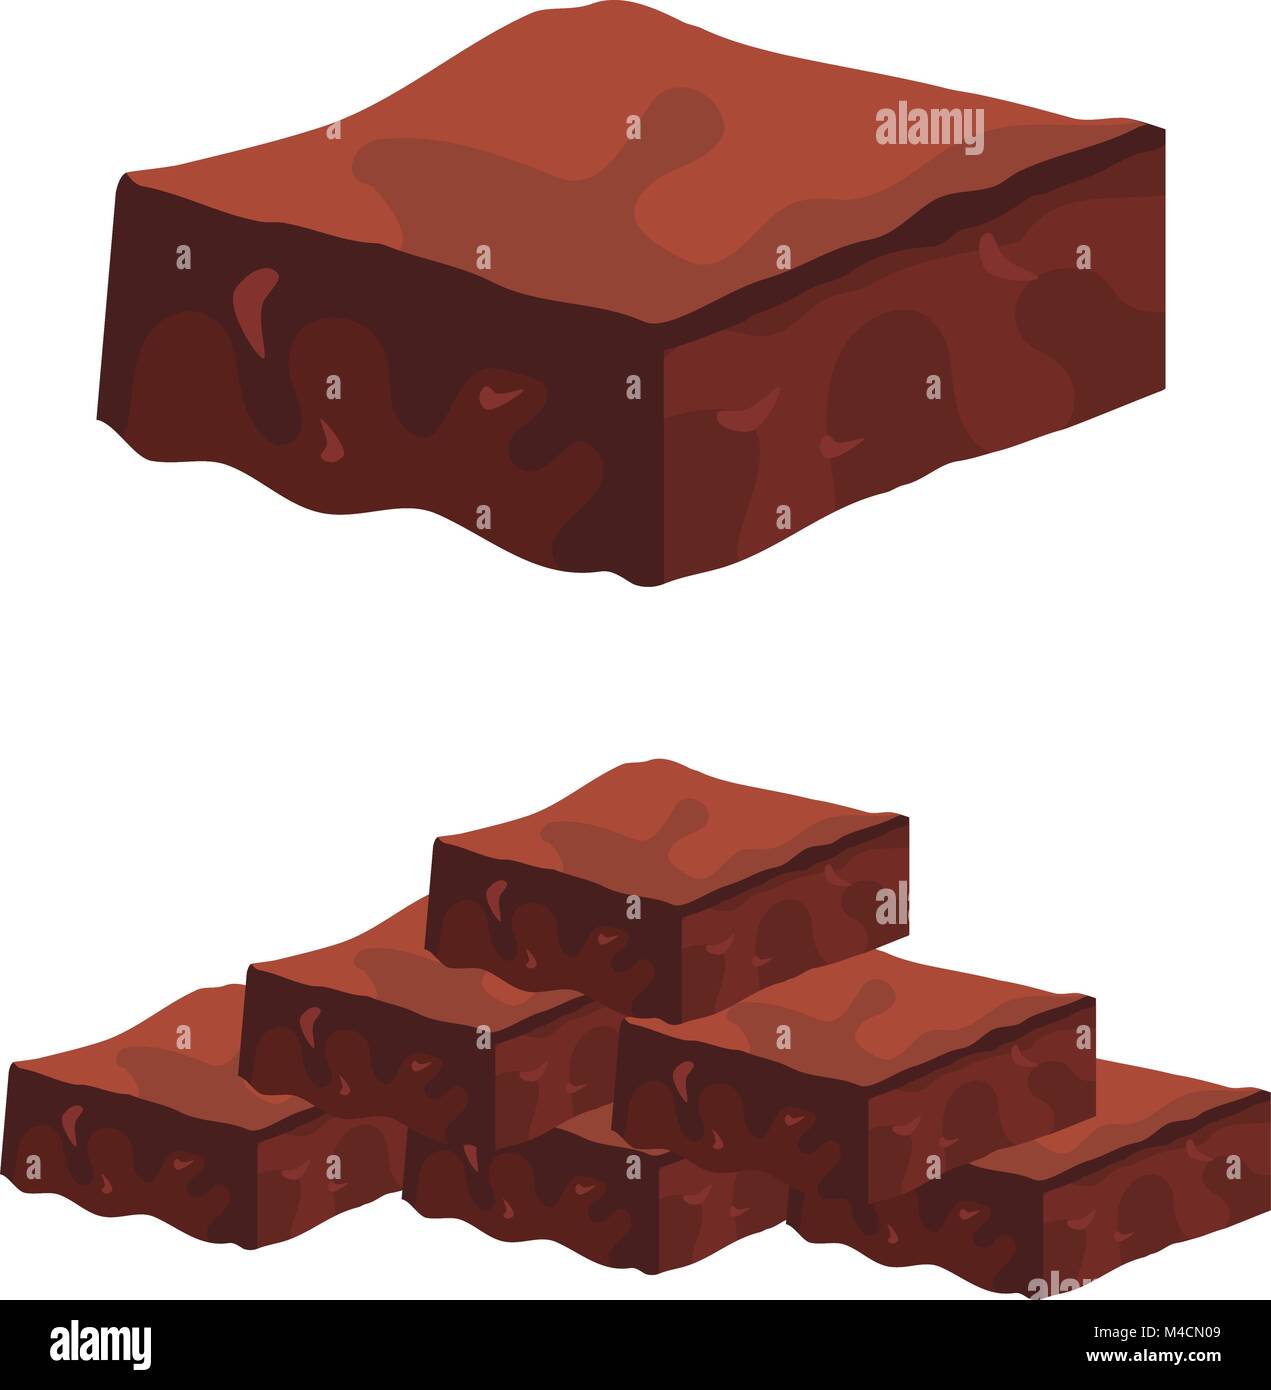 Une image de chocolat au chocolat. Illustration de Vecteur